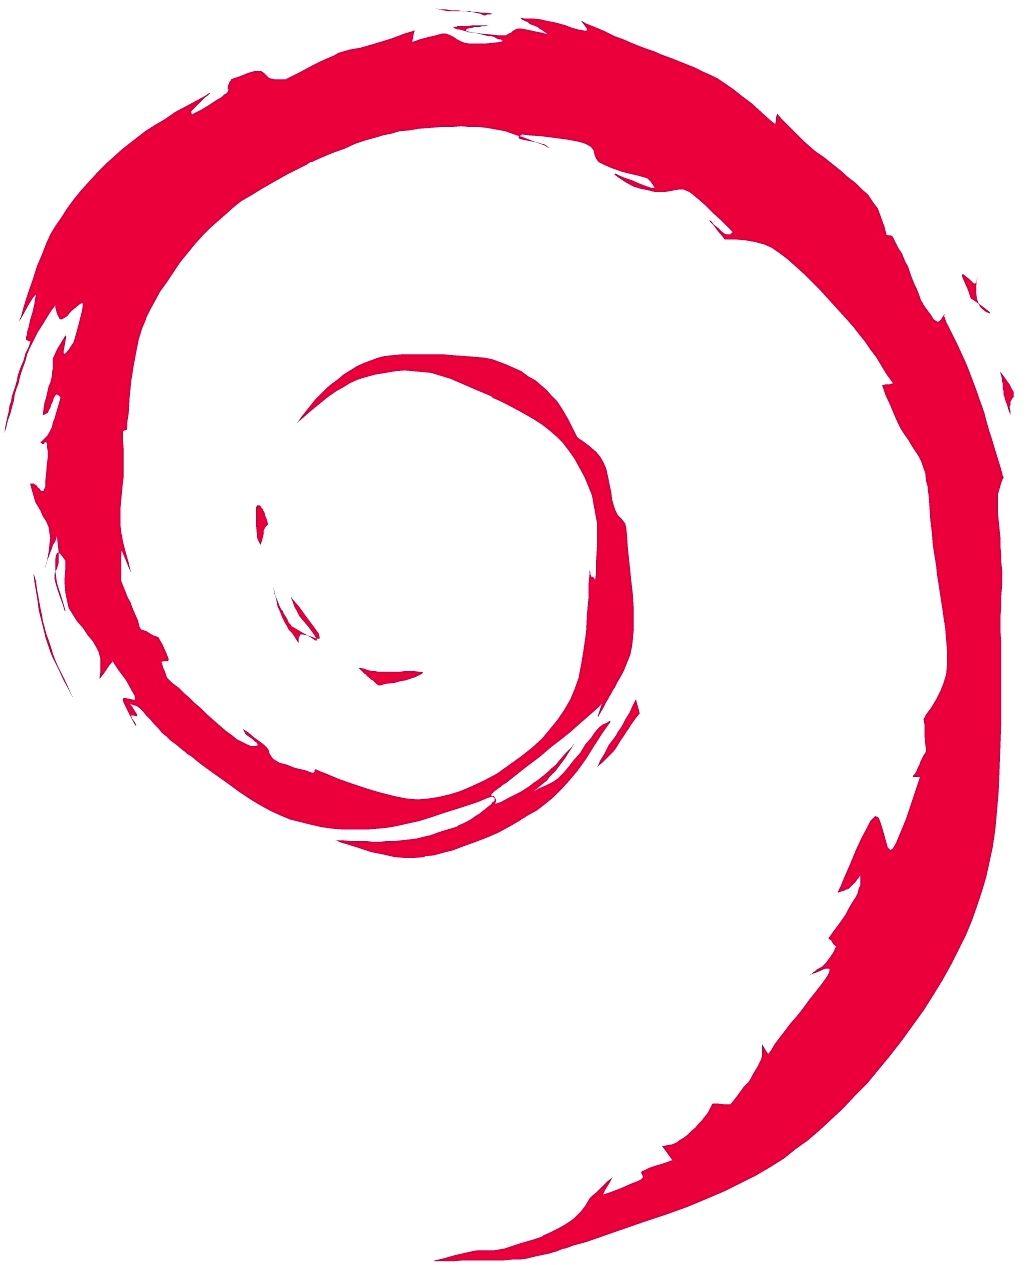 Debian Logo - Debian Logos